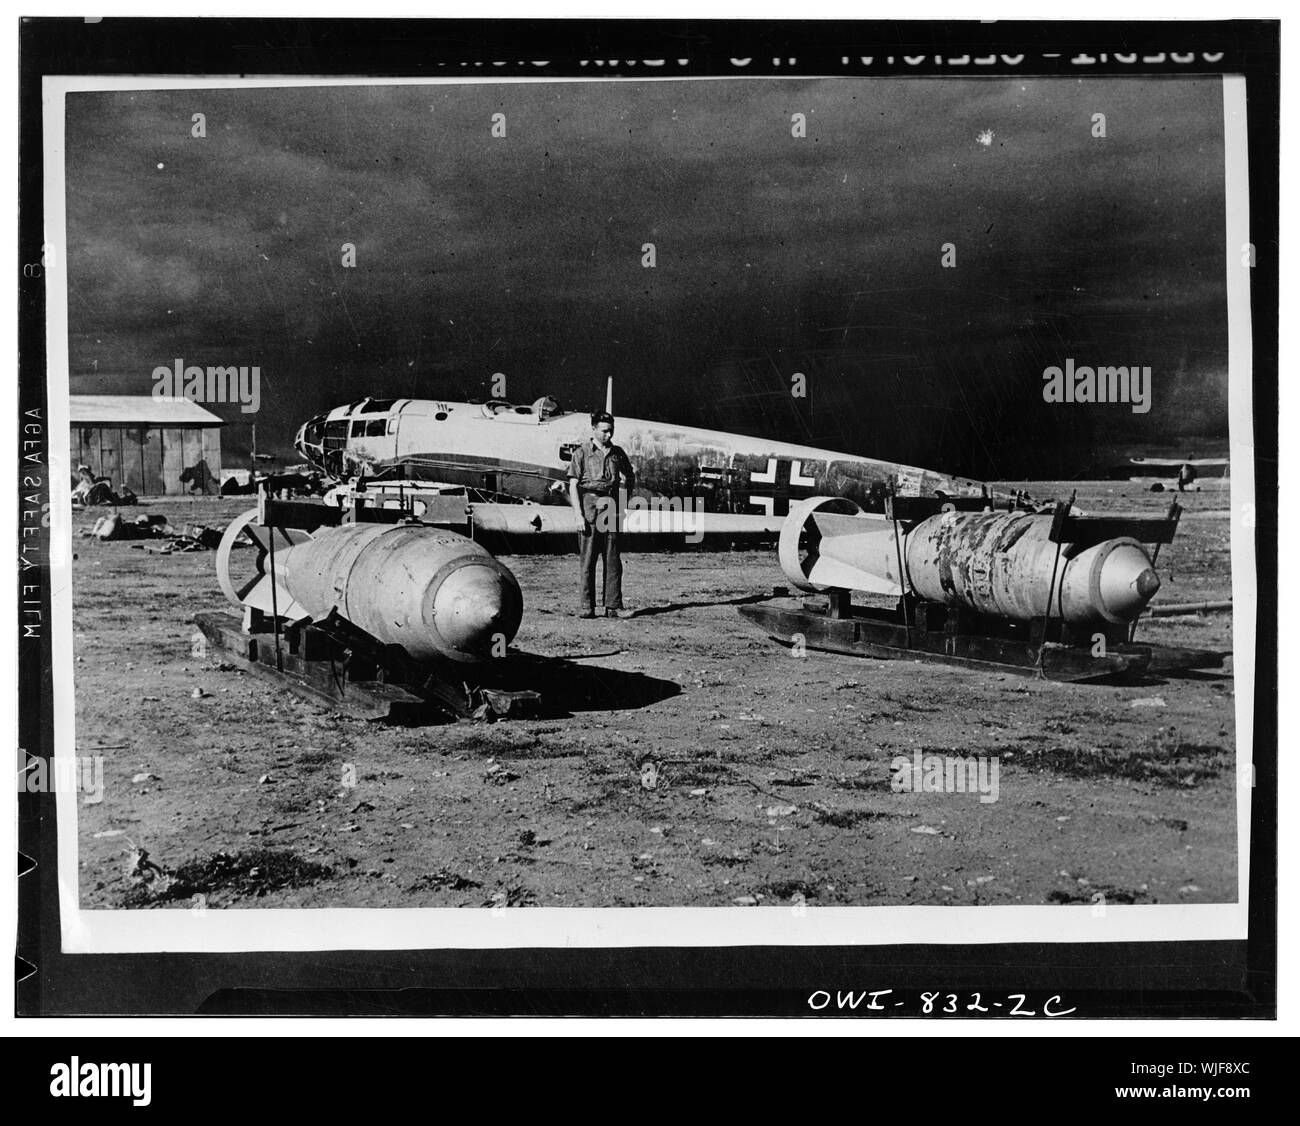 Vicinanze di Neghazi, Libia. Quando le Nazioni unite le forze di aria attaccato in questo campo di aviazione hanno costretto i nazisti ad abbandonare molte attrezzature e munizioni. In primo piano sono due bombe pesanti. Nota le slitte che erano stati utilizzati per spostarli all'aeroporto. Foto Stock